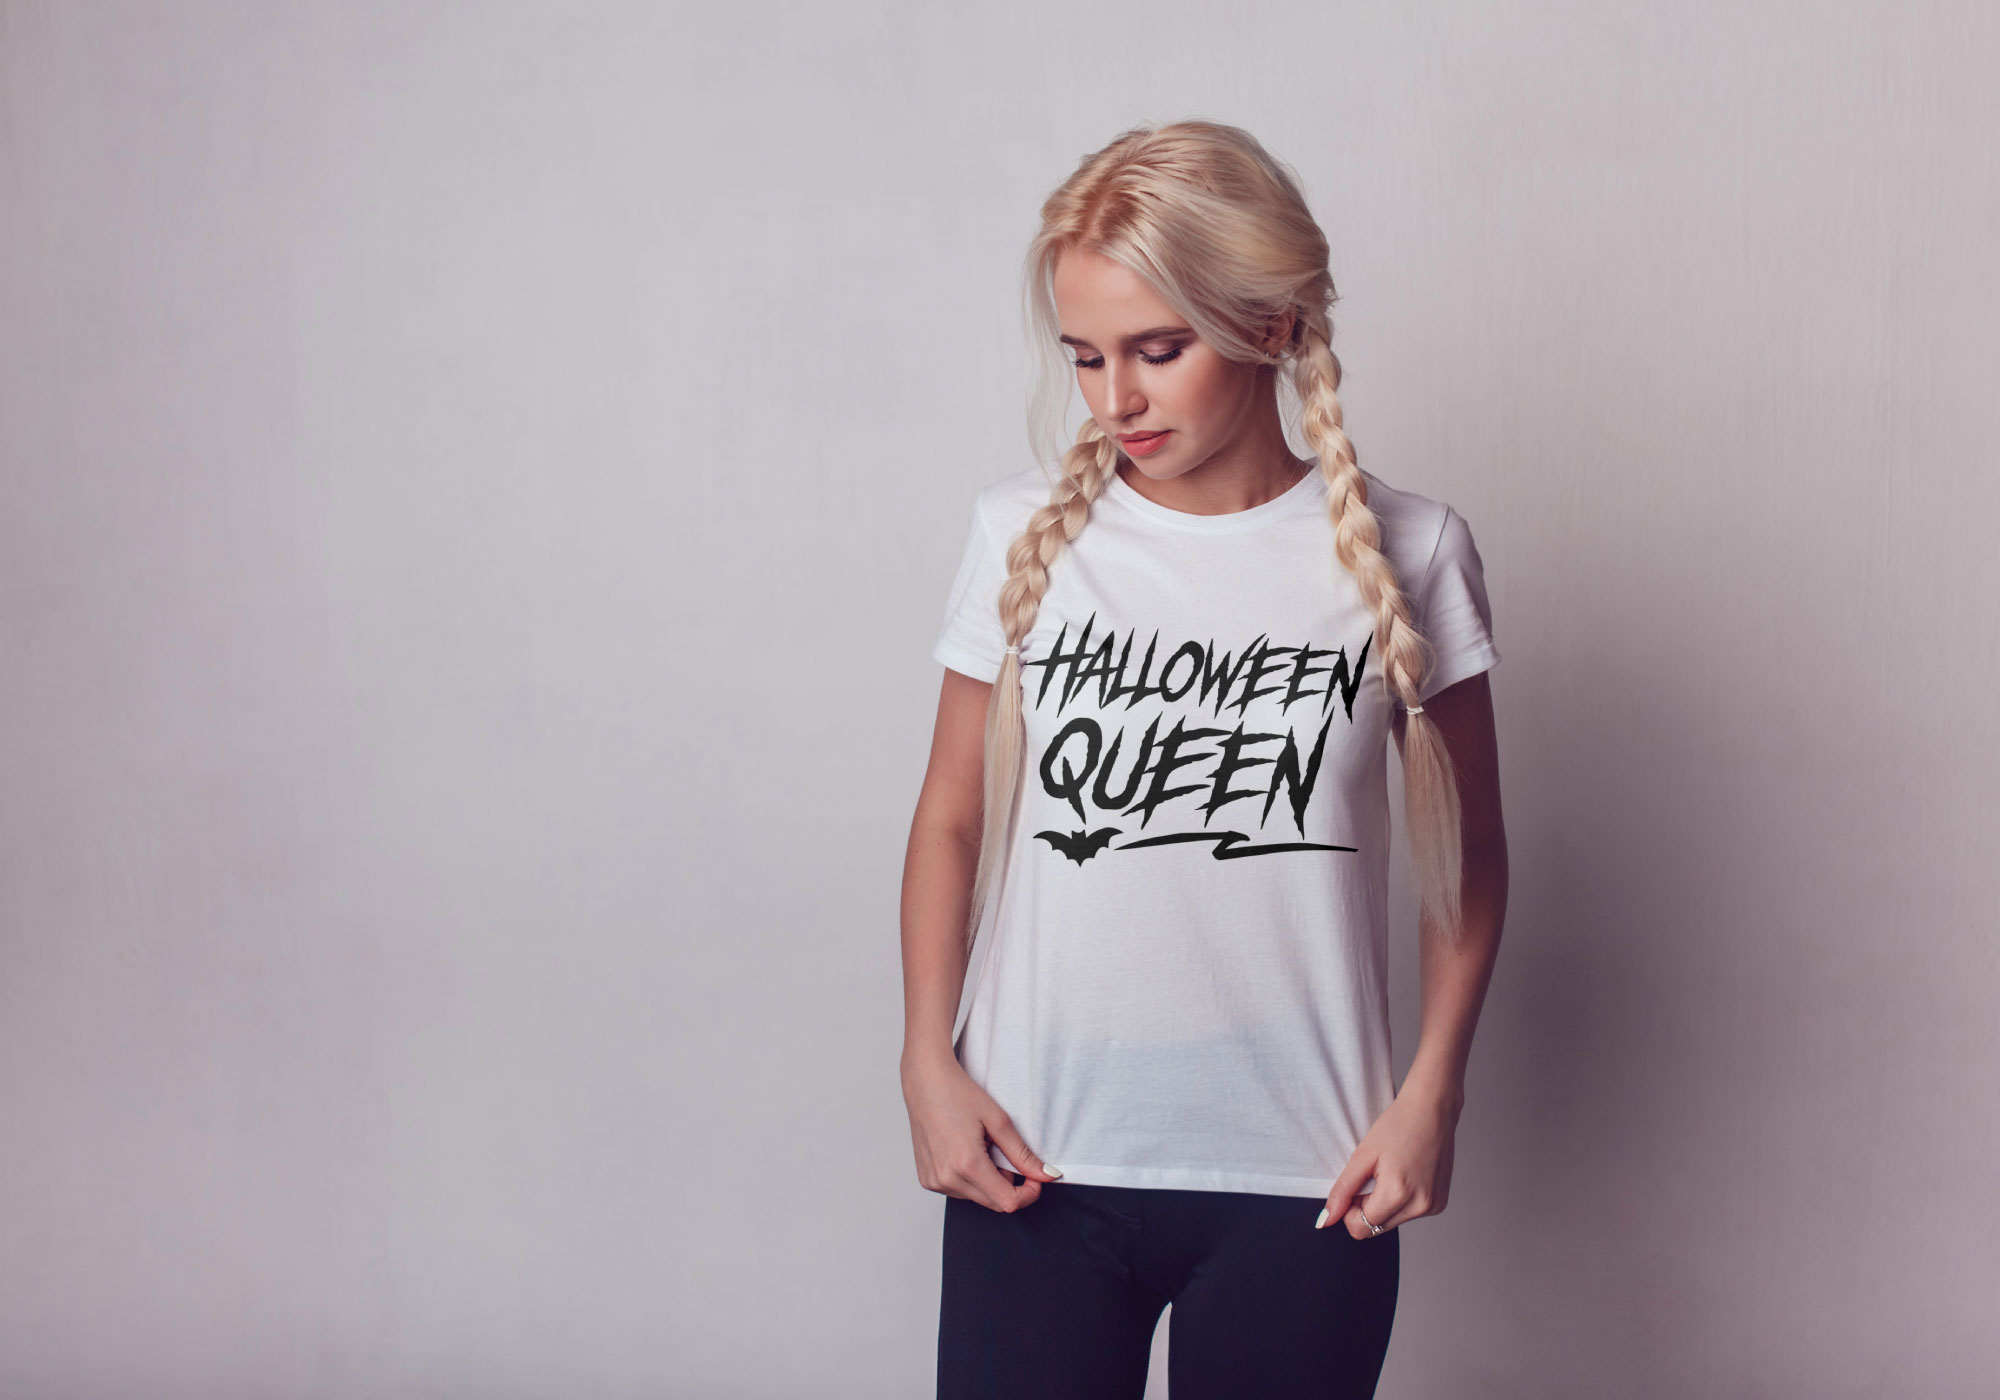 Free Halloween Queen SVG